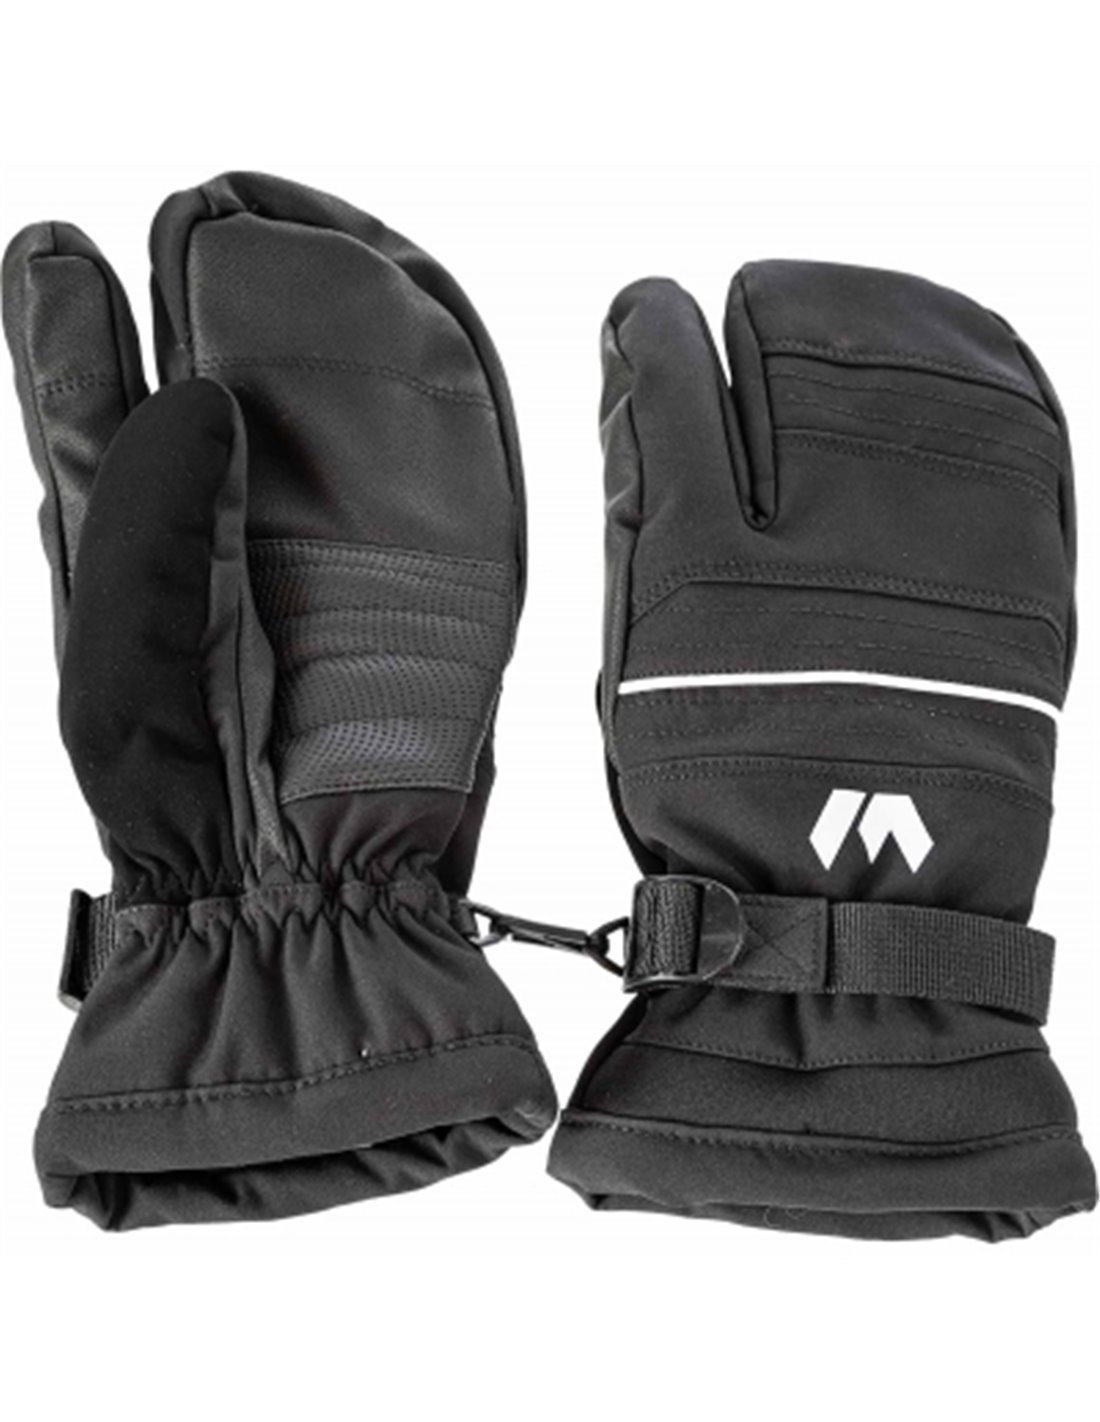 Whistler  Allegro 3 Finger Ski Gloves